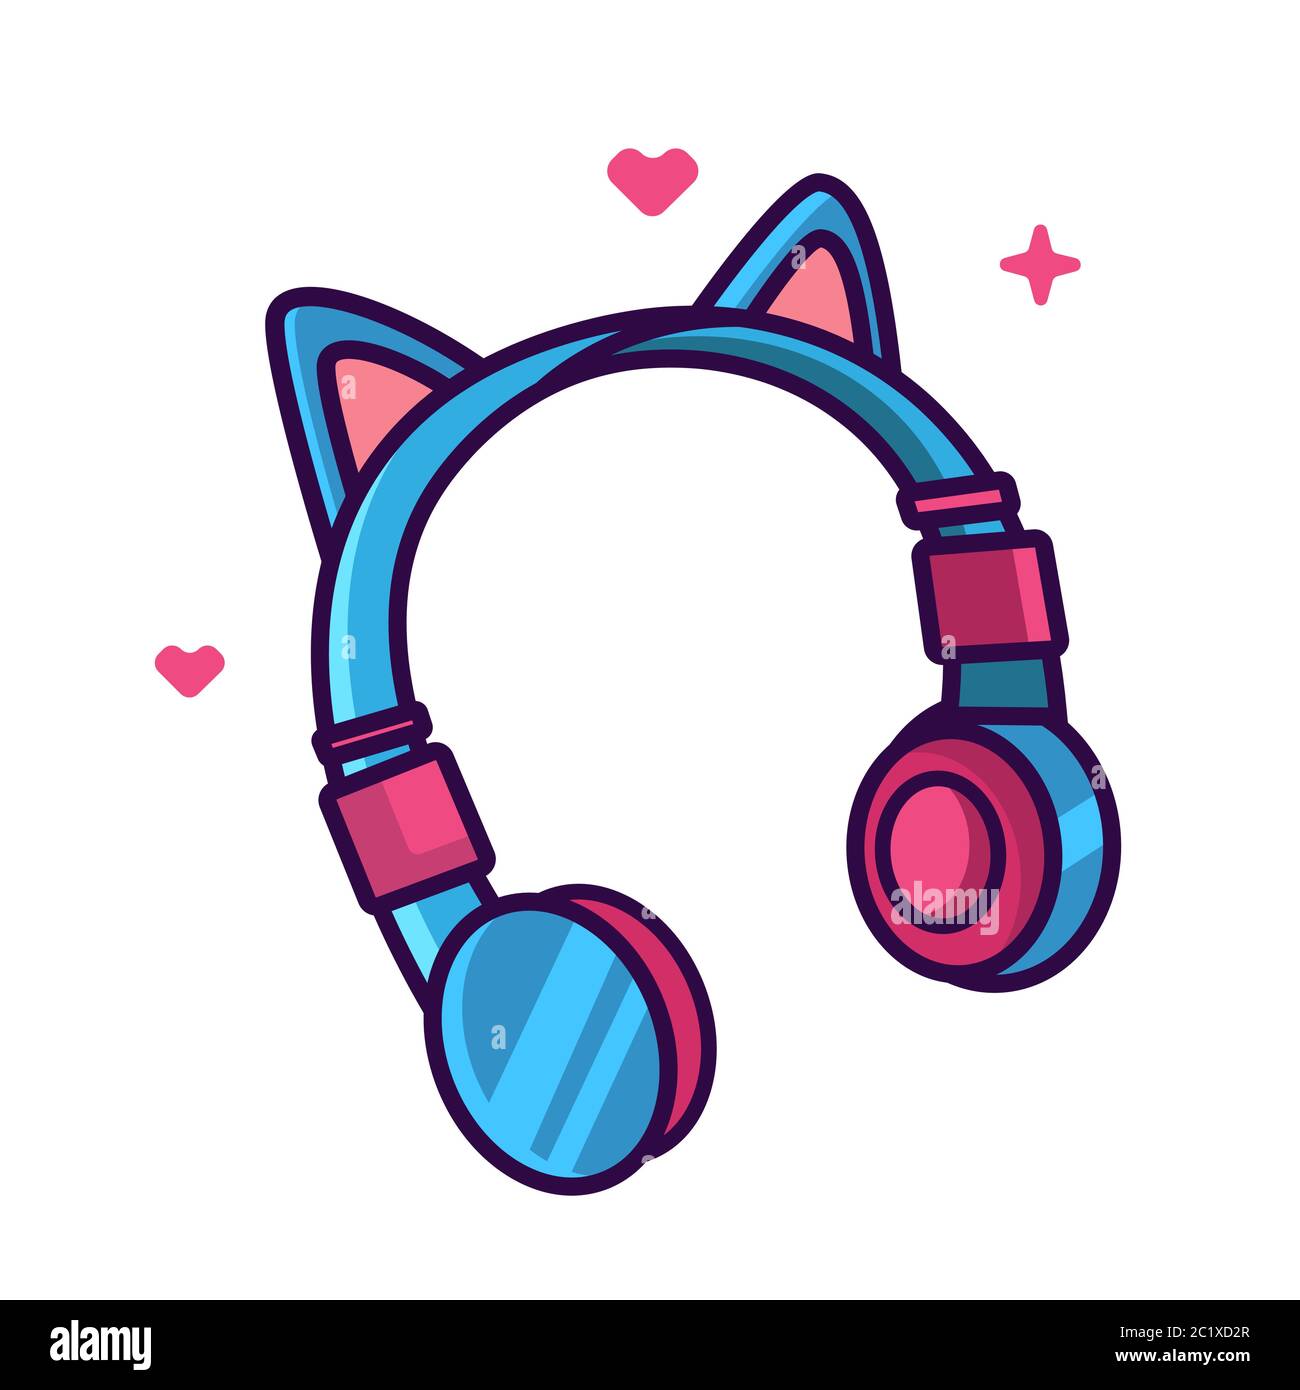 Girl headphone with cat ears vector illustration. Cute headphone. Flat cartoon style Stock Vector